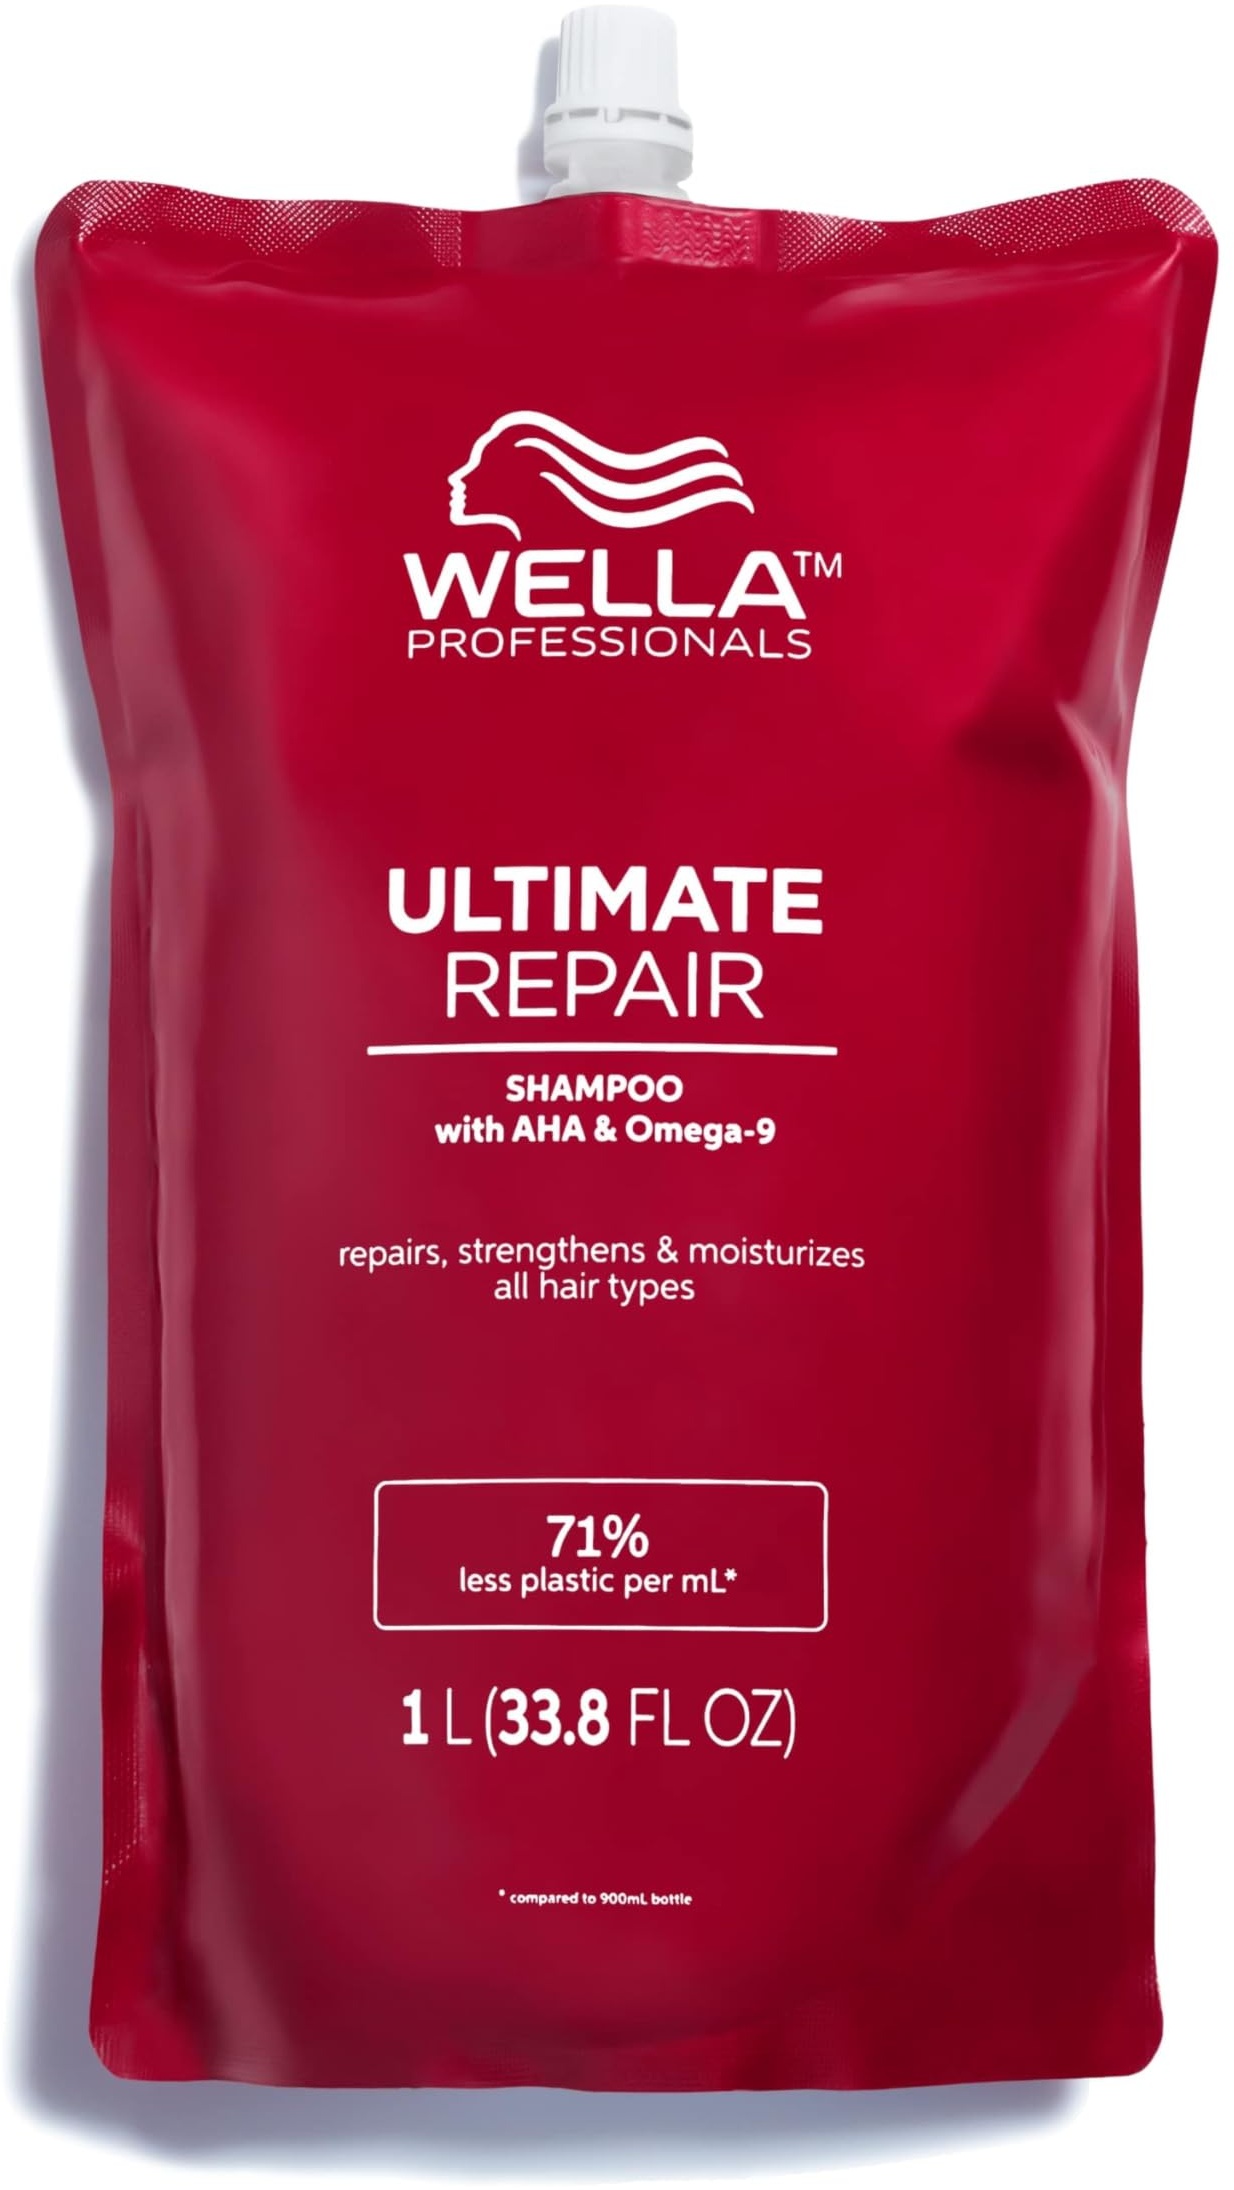 Wella Professionals Ultimate Repair Shampoo zur Tiefenreinigung – reparierendes Shampoo mit Metal-Purifier-Technologie gegen Schadstoffe – Feuchtigkeitsshampoo mit luxuriösem Duft – 1 L Beutel